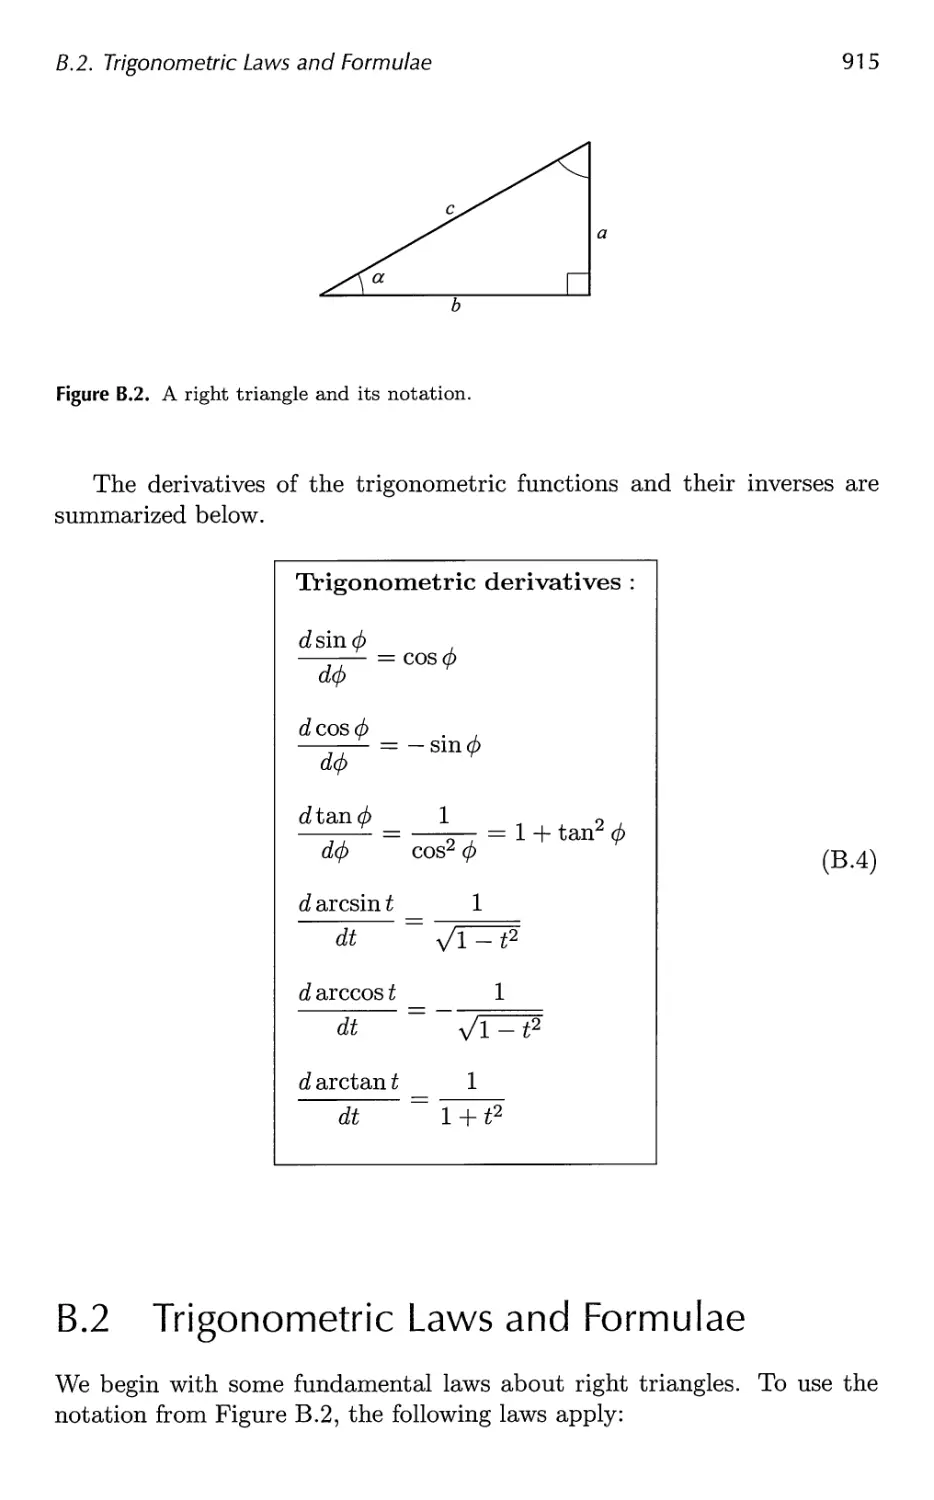 B.2 Trigonometric Laws and Formulae